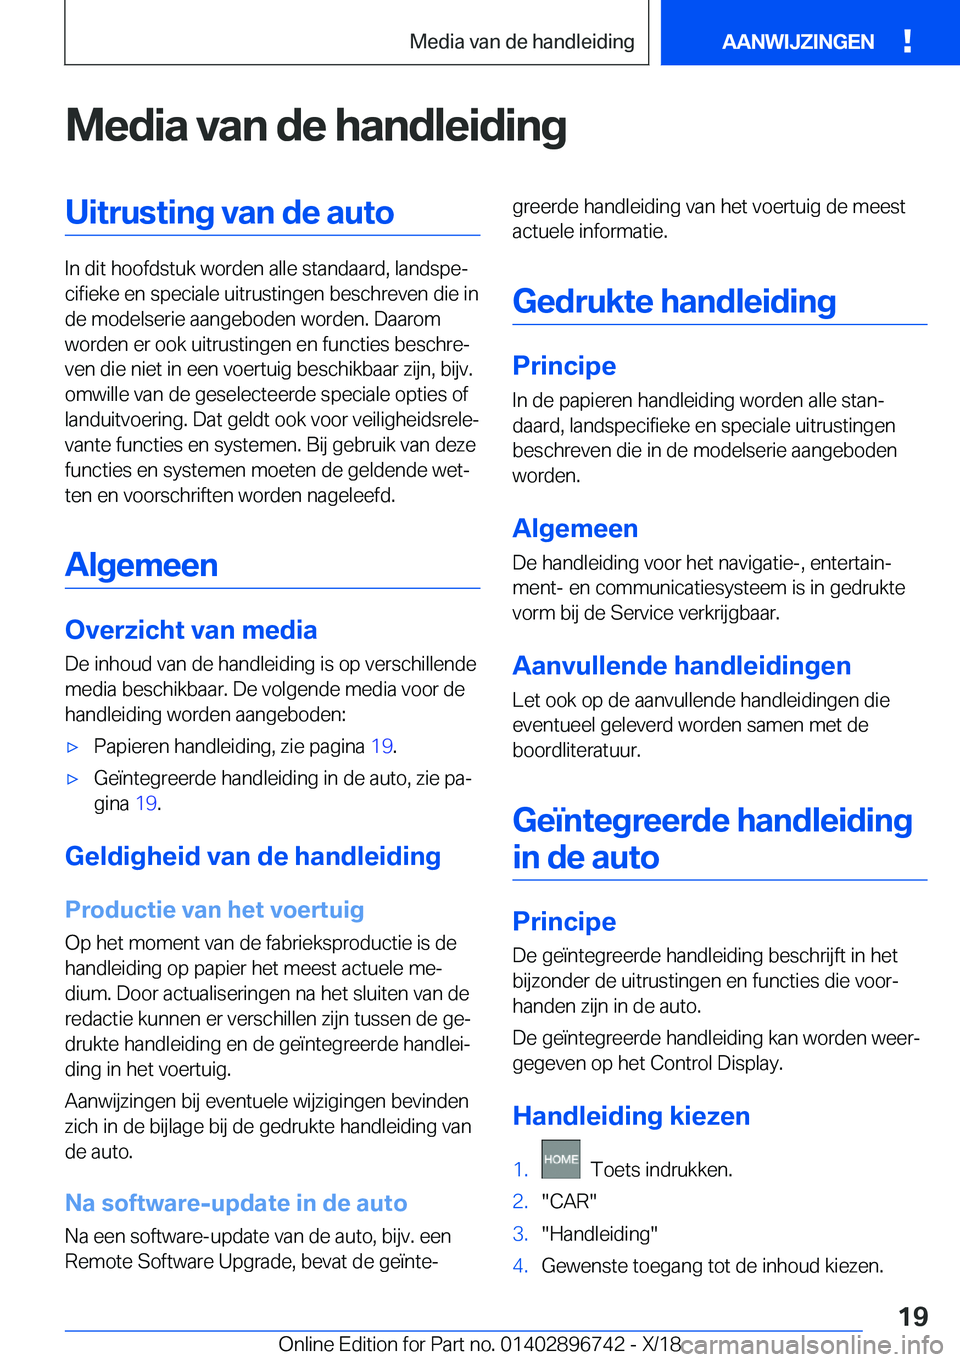 BMW X5 2019  Instructieboekjes (in Dutch) �M�e�d�i�a��v�a�n��d�e��h�a�n�d�l�e�i�d�i�n�g�U�i�t�r�u�s�t�i�n�g��v�a�n��d�e��a�u�t�o
�I�n��d�i�t��h�o�o�f�d�s�t�u�k��w�o�r�d�e�n��a�l�l�e��s�t�a�n�d�a�a�r�d�,��l�a�n�d�s�p�ej�c�i�f�i�e�